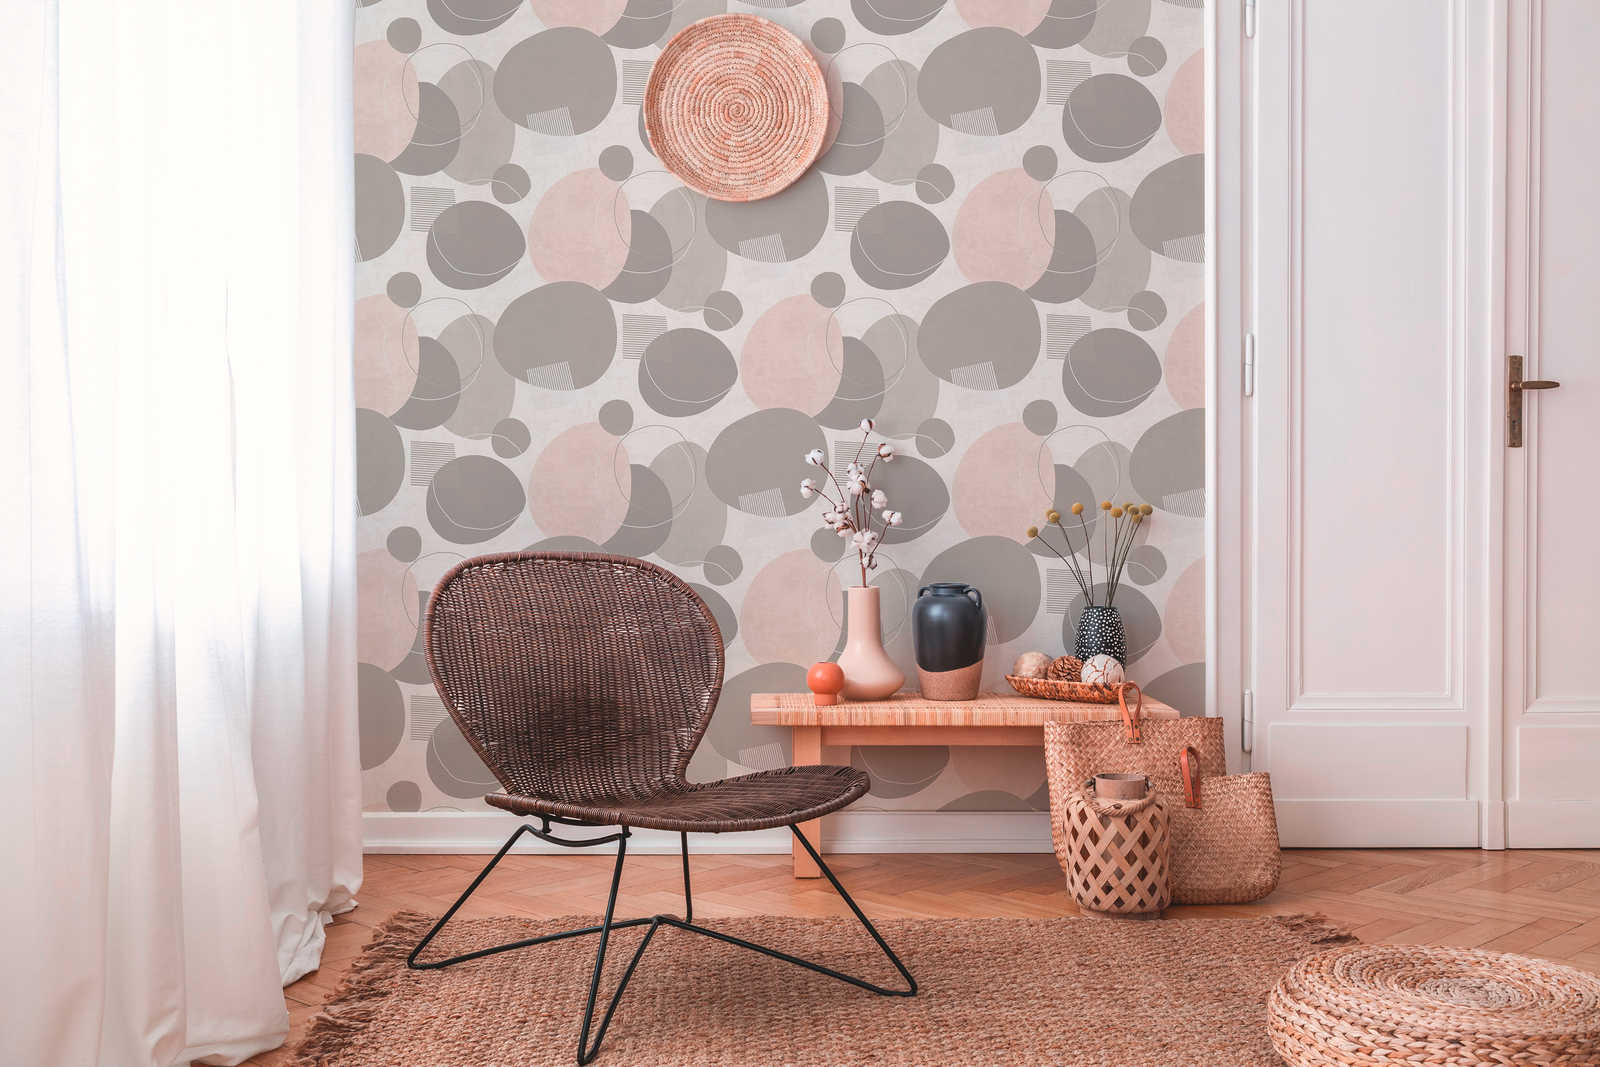             Retro wallpaper Mid Century Modern pattern - beige, pink, cream
        